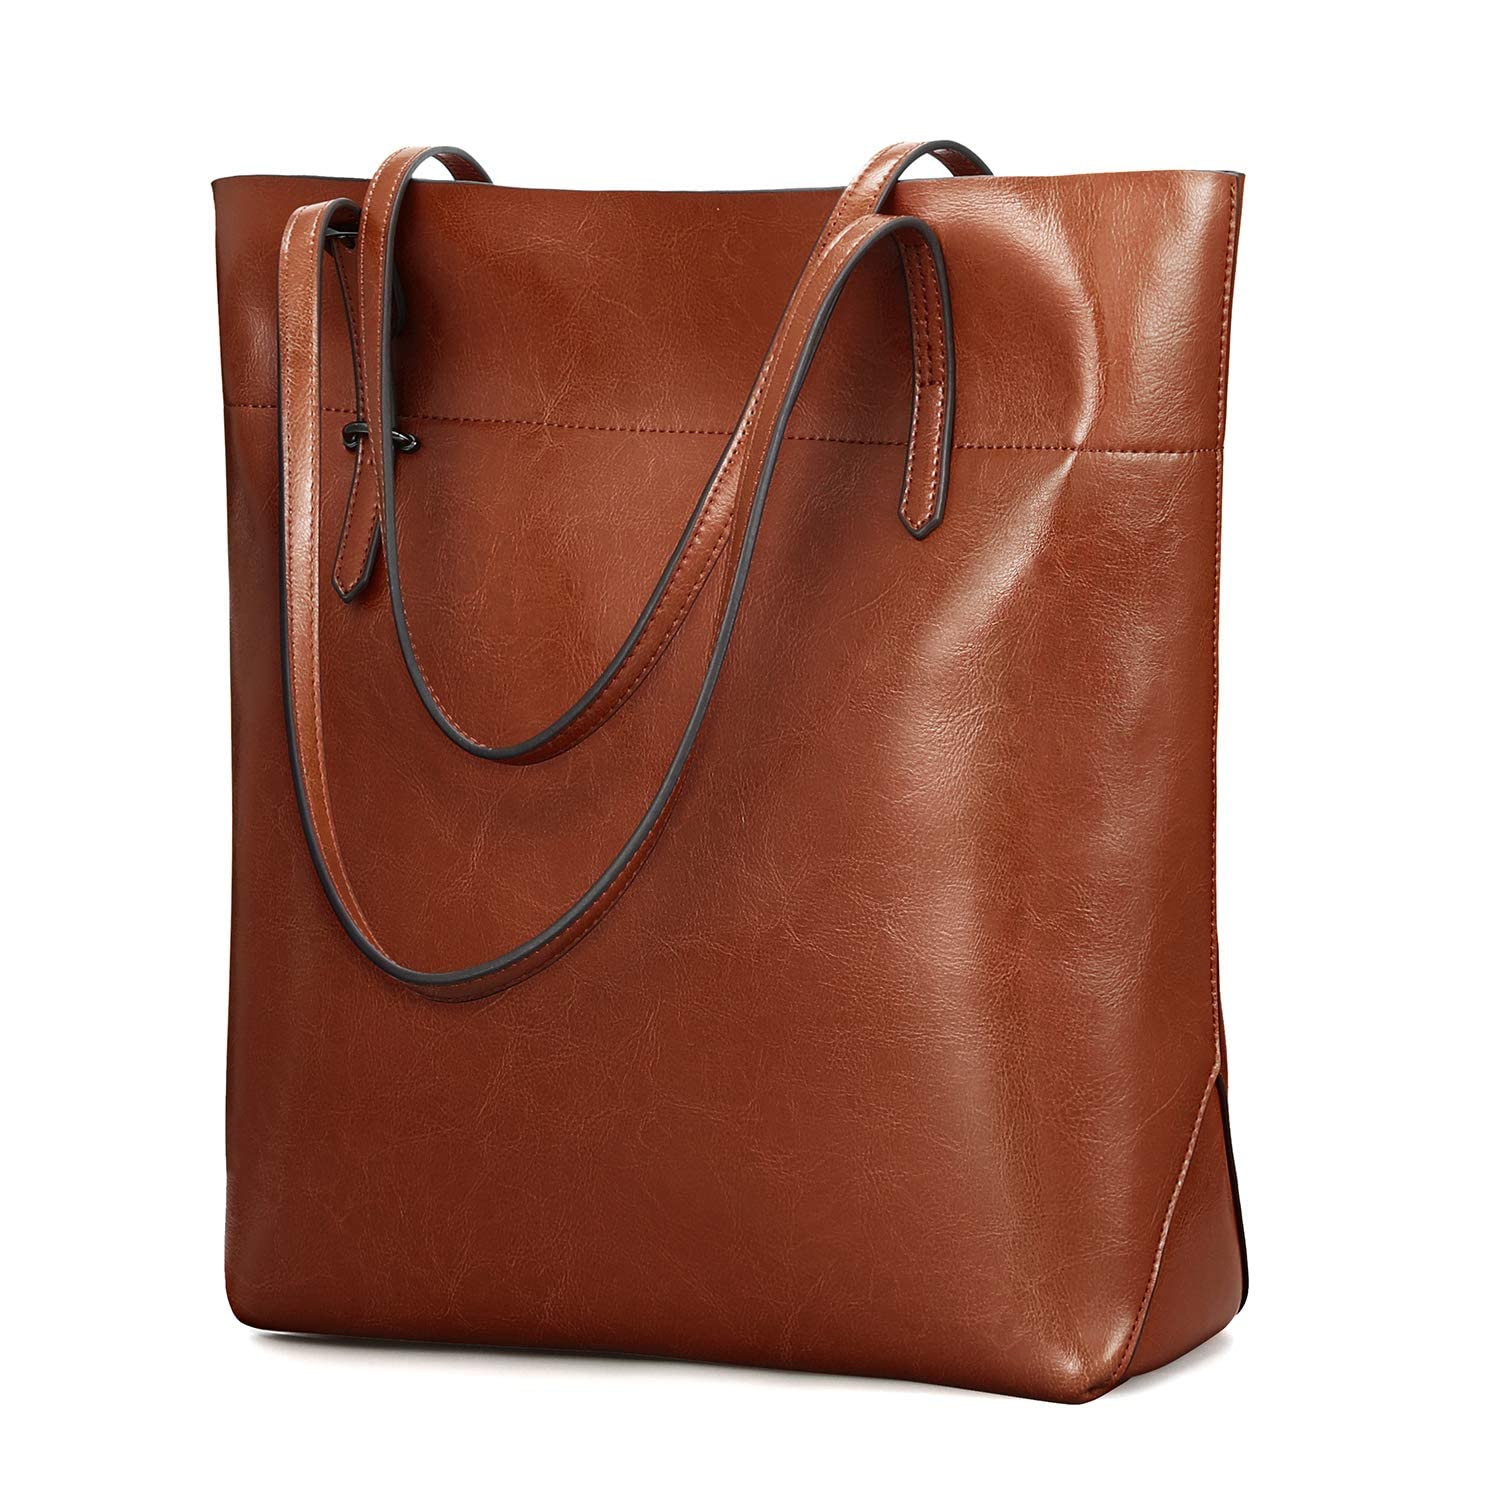 送料無料Kattee Vintage Genuine Leather Tote Shoulder Bag With Adjustable Handles Brown並行輸入品